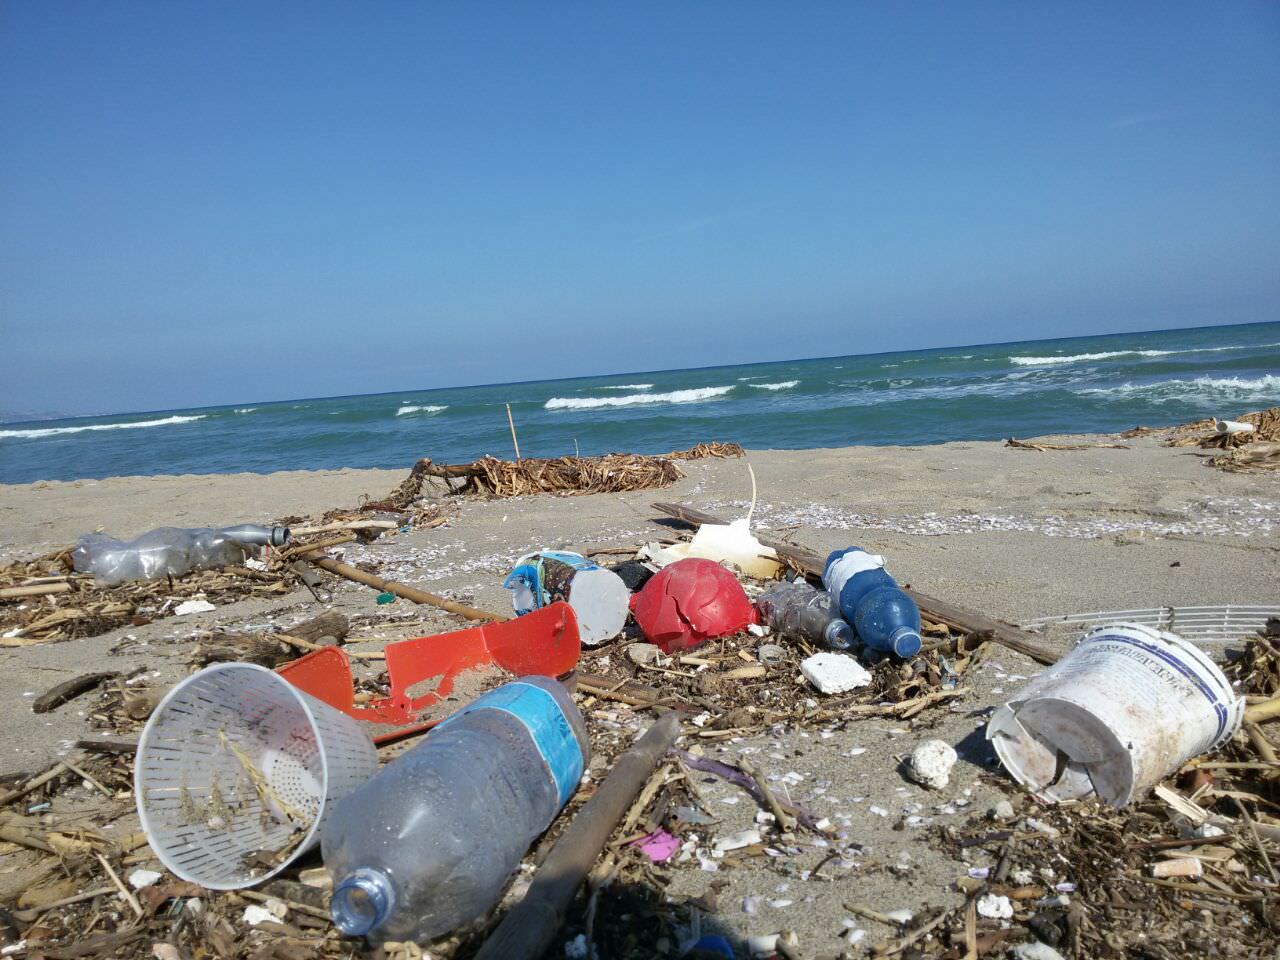 A Catania la Playa invasa dai rifiuti. Ecco le immagini